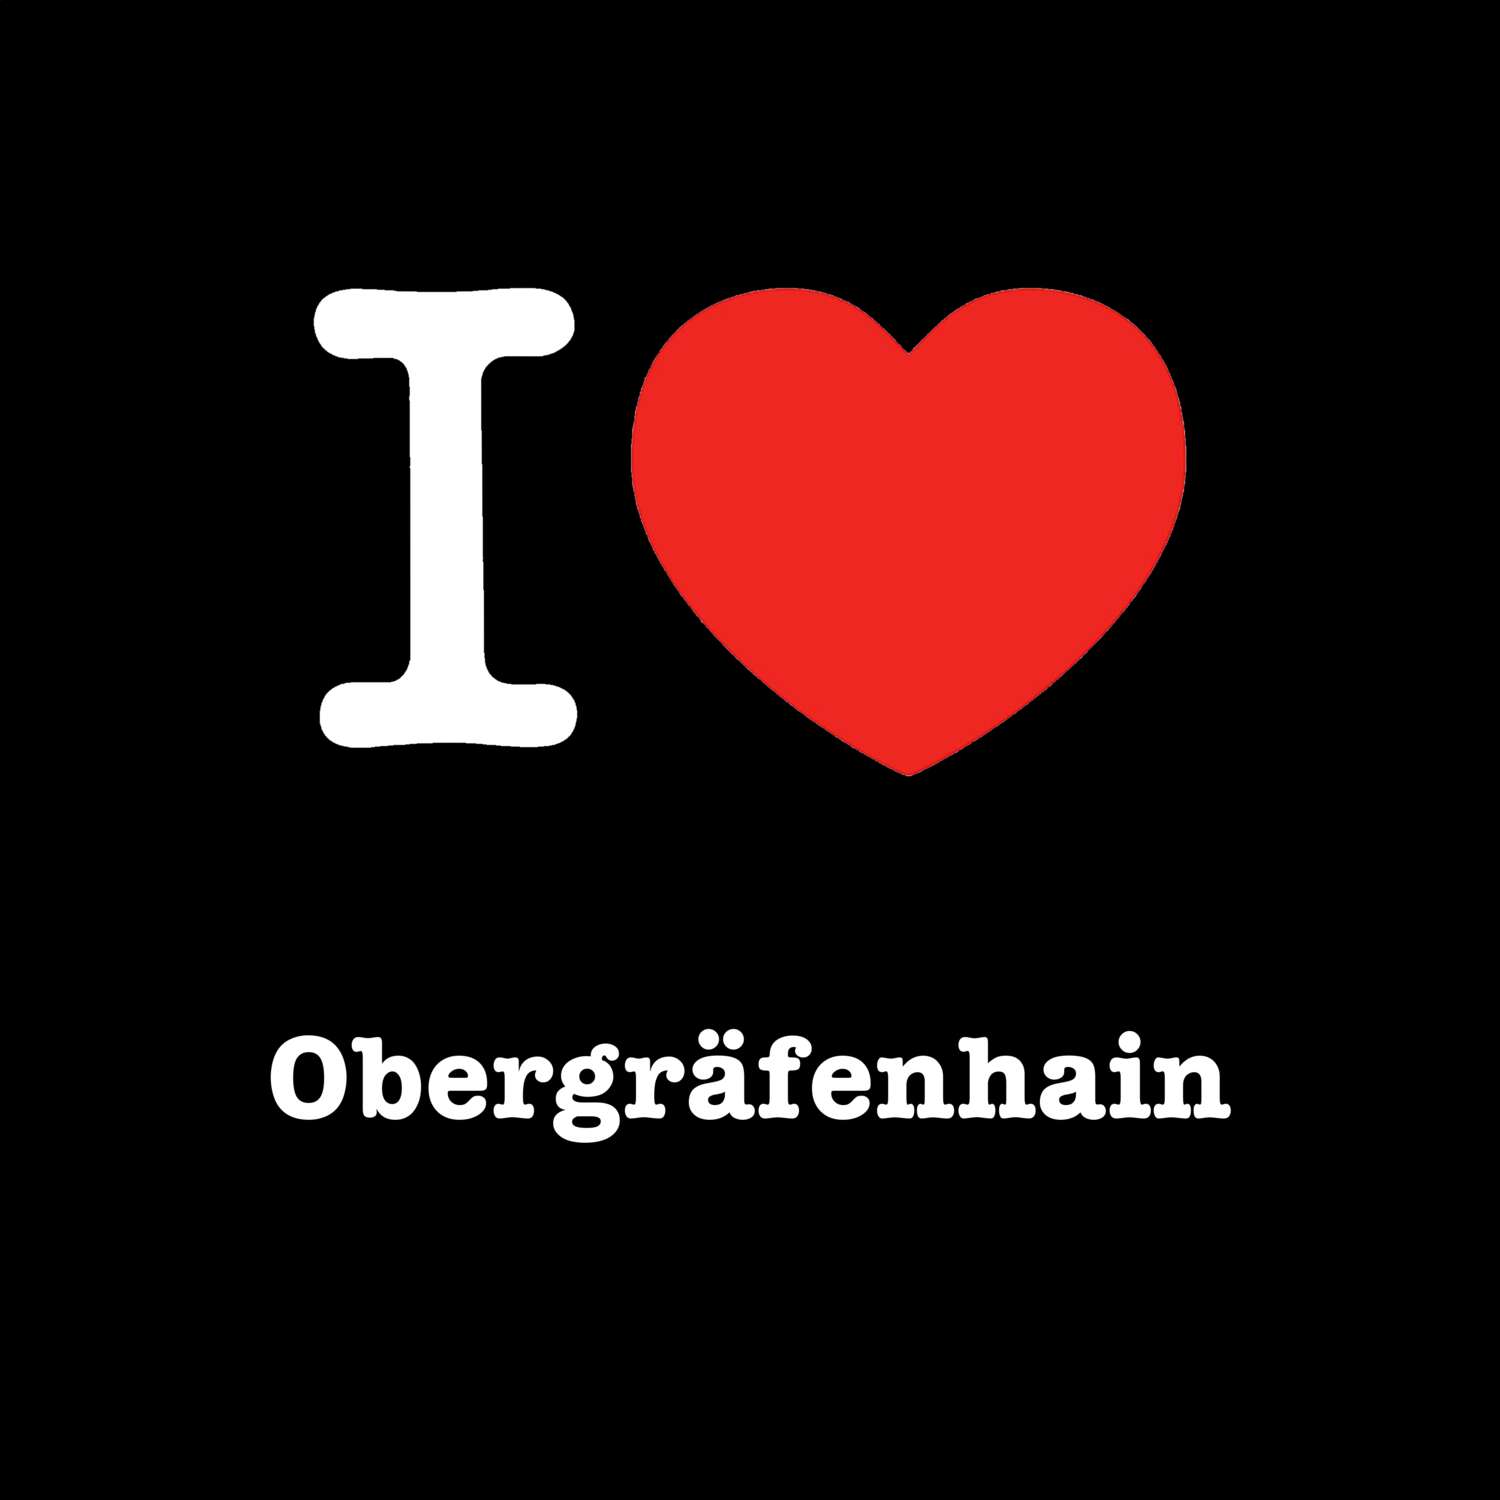 Obergräfenhain T-Shirt »I love«